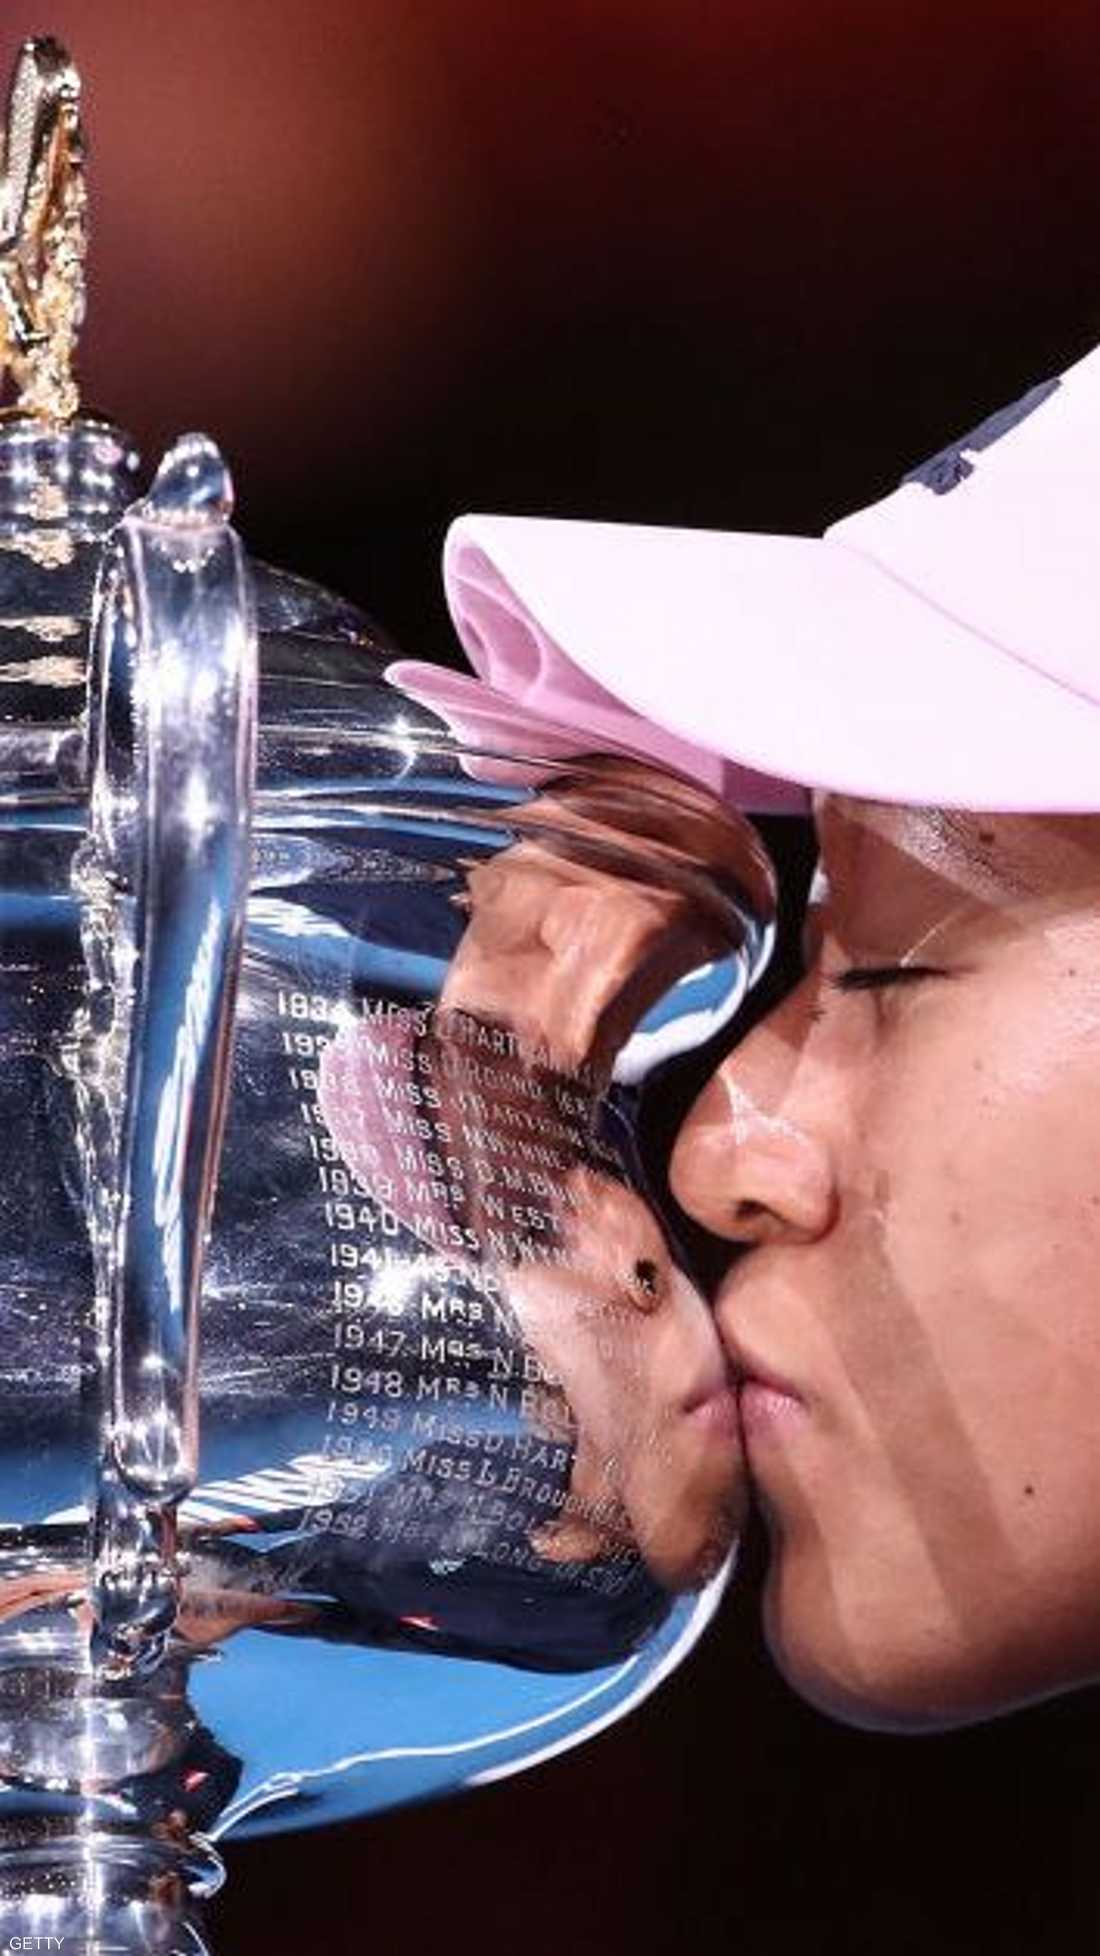 أصبحت نعومي أوساكا أول لاعبة آسيوية تتصدر التصنيف العالمي للاعبات التنس المحترفات، الذي سيصدر، الاثنين.